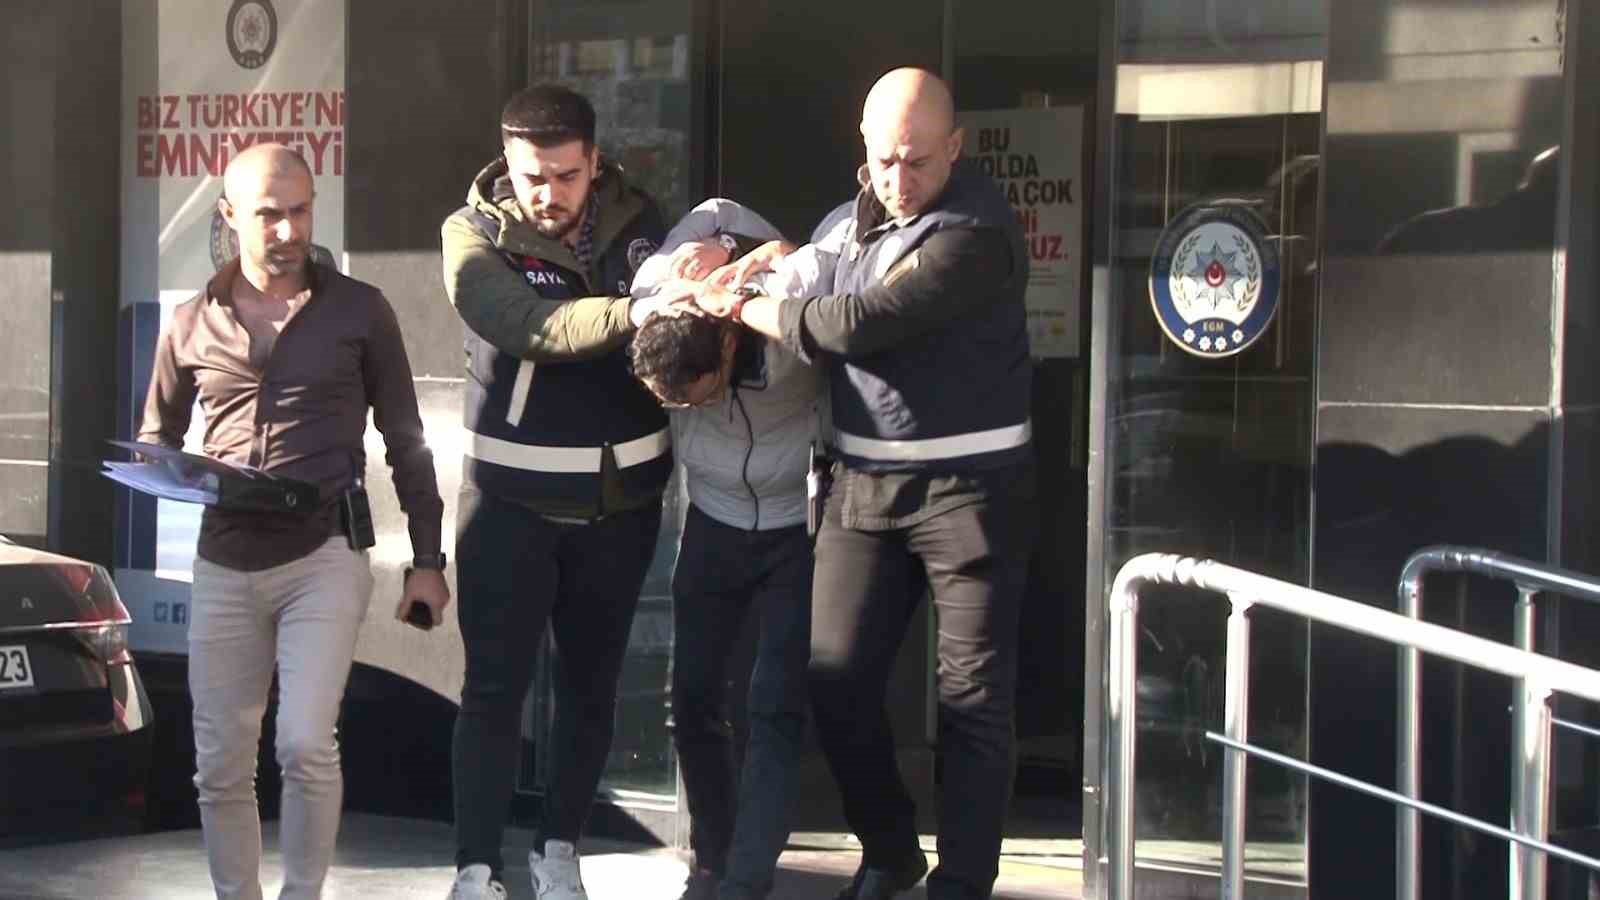 Kadıköy’de servis minibüsünü kaçıran zanlı adliyeye sevk edildi
